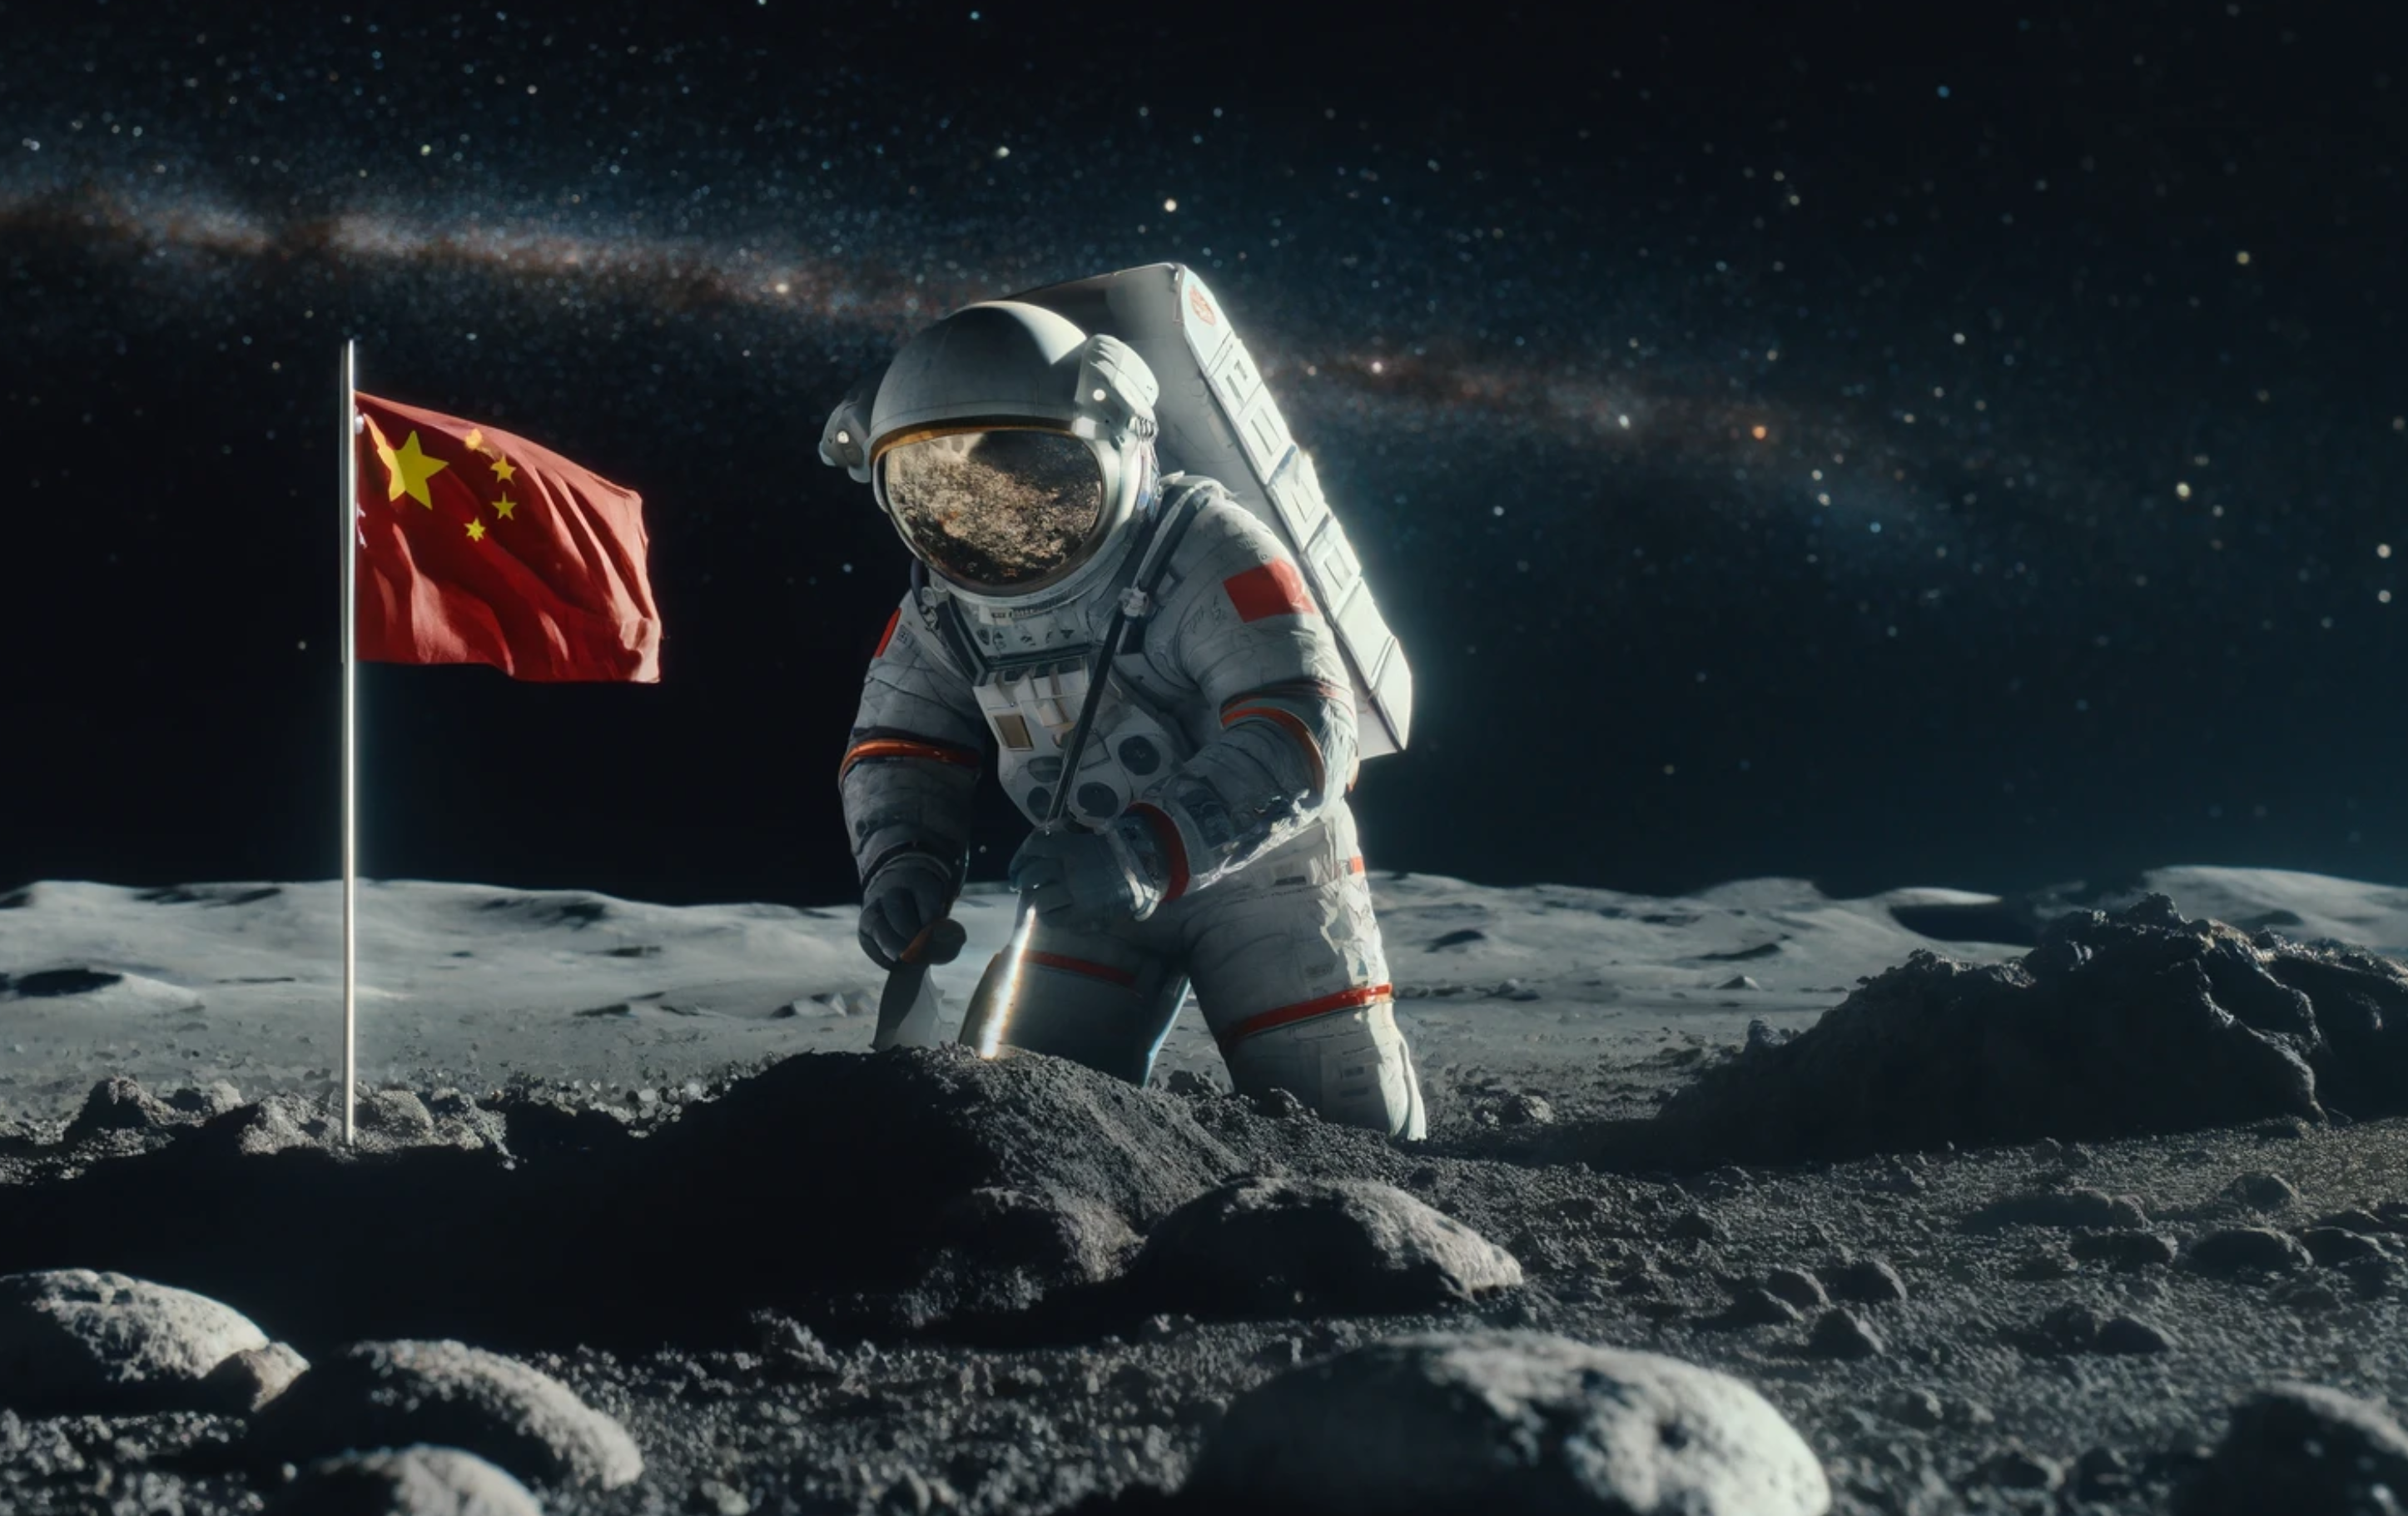 Kineski astronaut na Mjesecu.